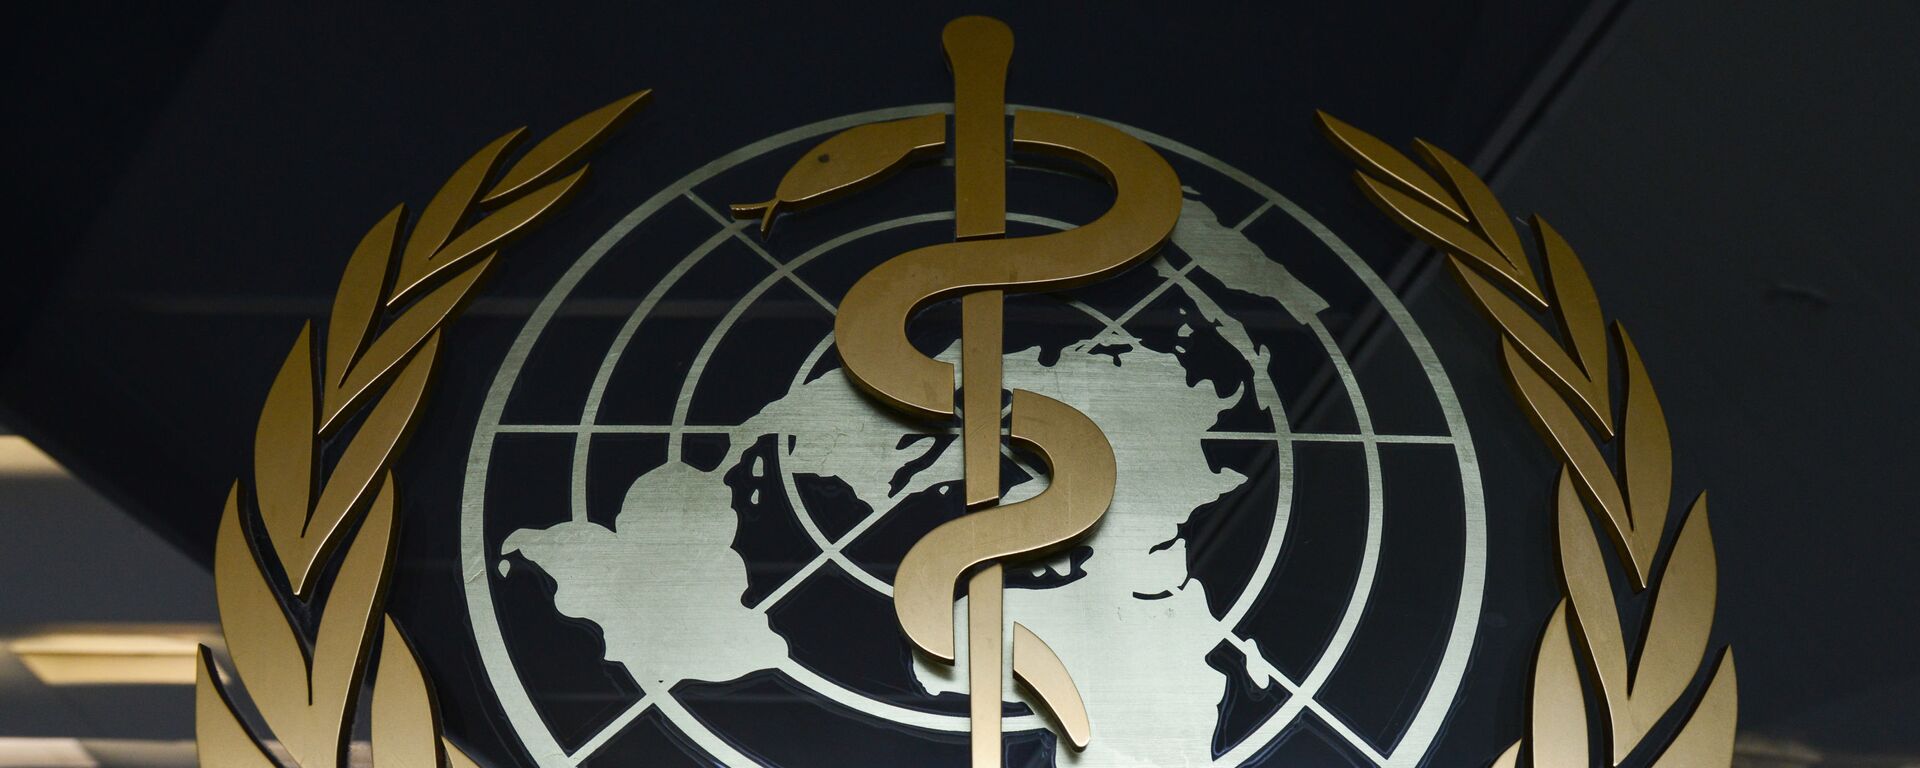 Эмблема Всемирной организации здравоохранения - Sputnik Таджикистан, 1920, 18.01.2021